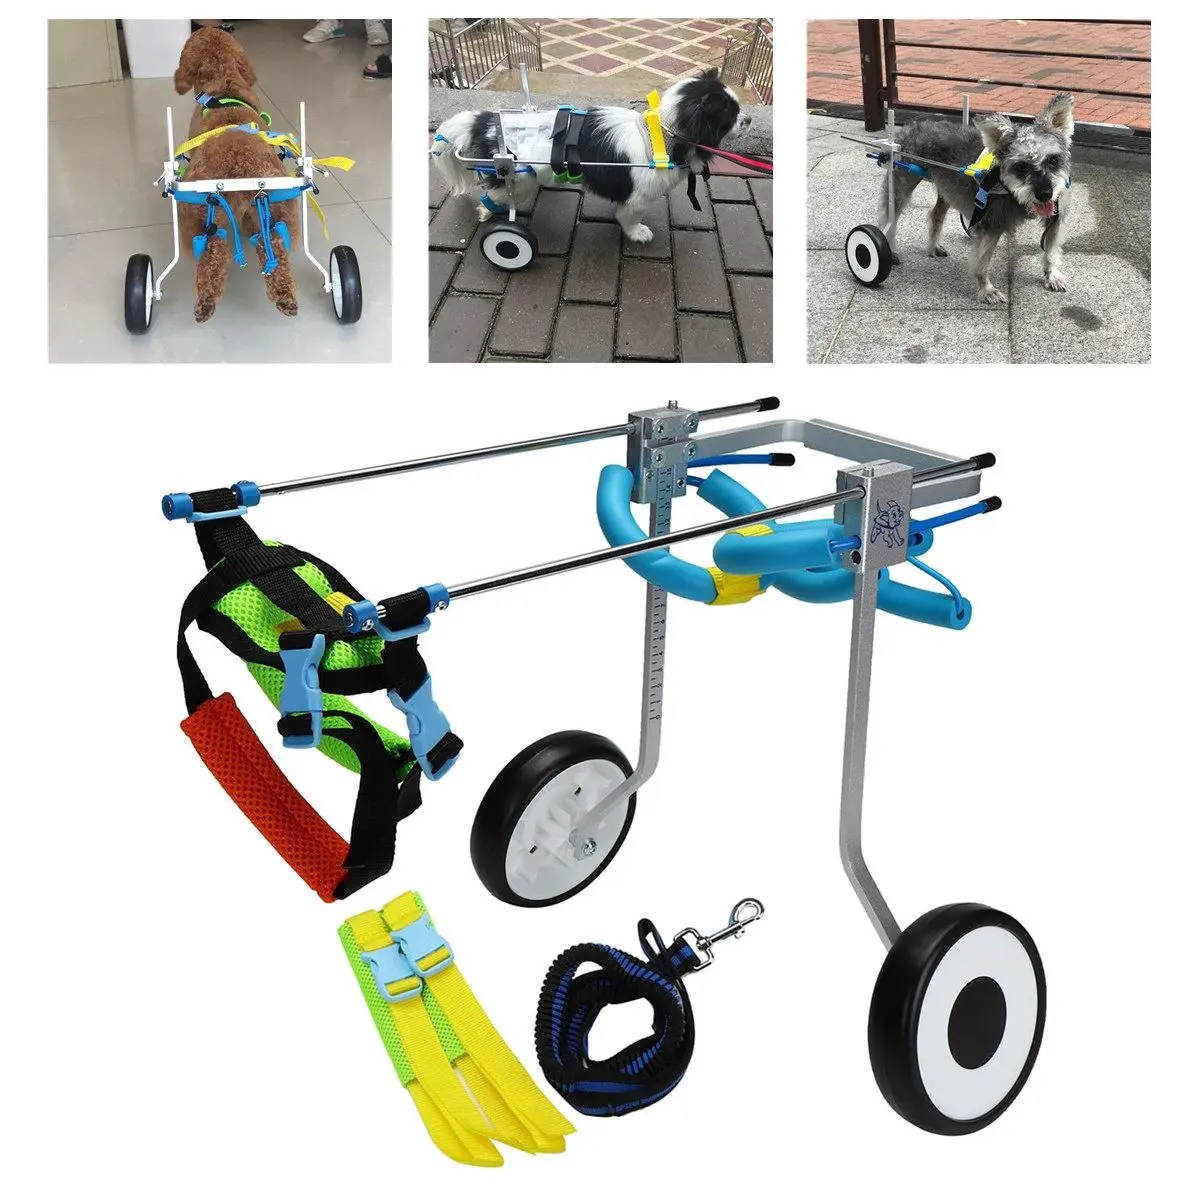 2 колеса " алюминиевое кресло для питомца собаки кошки XS модель прогулочная тележка скутер для инвалидов задняя нога может регулировать вес питомца 3-15 кг